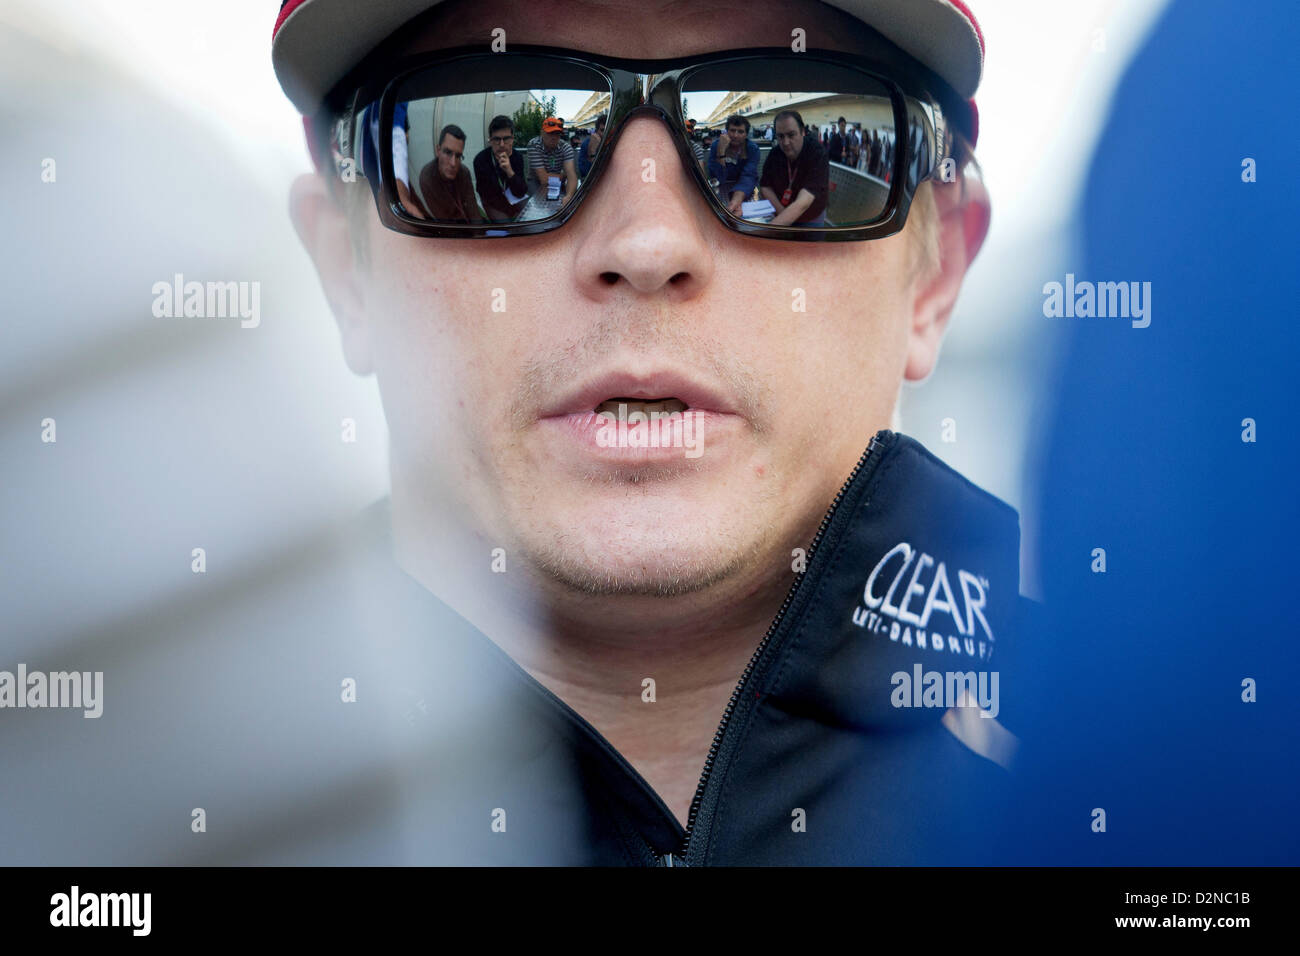 Finnischer Formel1-Fahrer Kimi Räikkönen von Lotus im Gespräch mit Journalisten nach der Qualifikation-Session auf dem Circuit of The Americas in Austin, Texas, USA, 17. November 2012. Die Formel 1 United States Grand Prix statt findet am 18. November 2012. Foto: David sollte/dpa Stockfoto